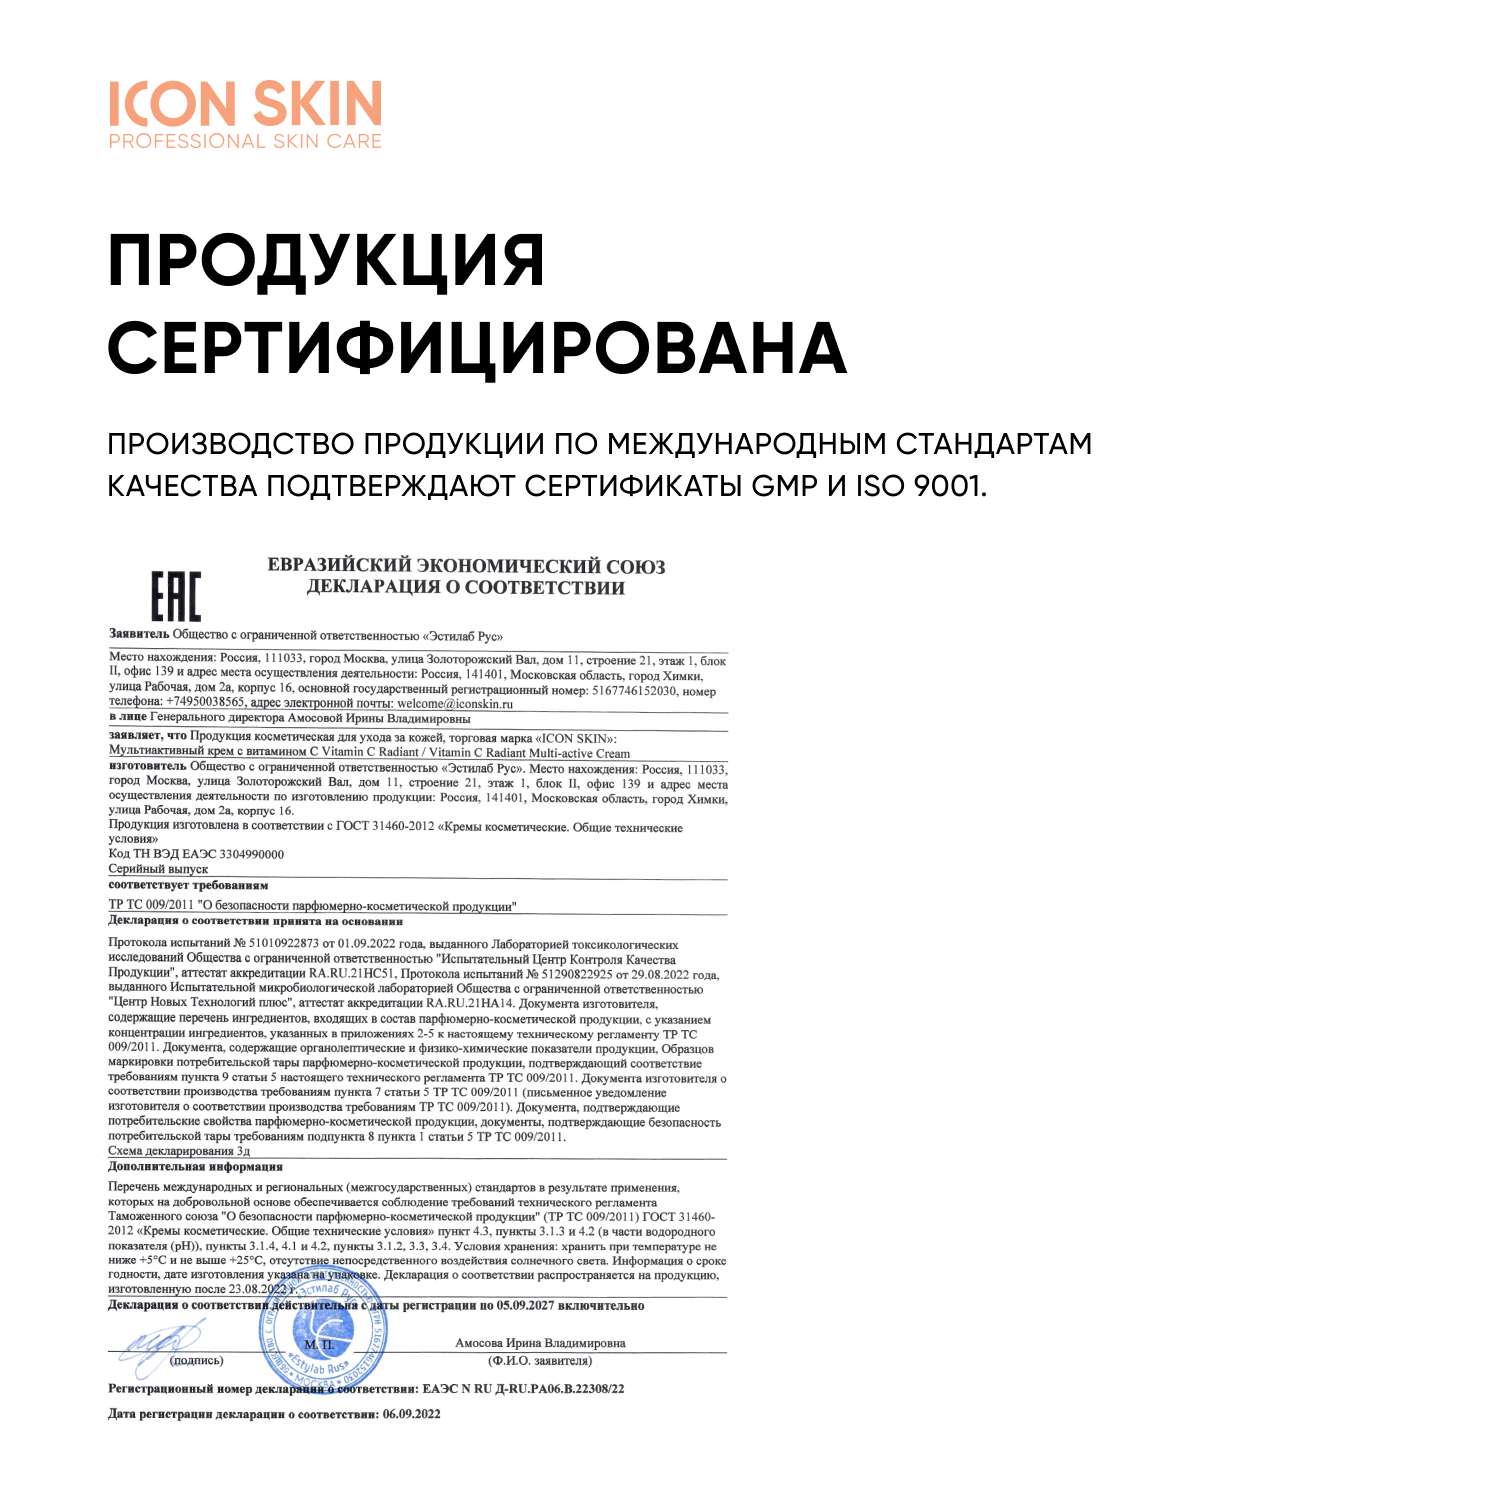 Мультиактивный крем ICON SKIN Vitamin C Radiant для комбинированной и жирной кожи - фото 10